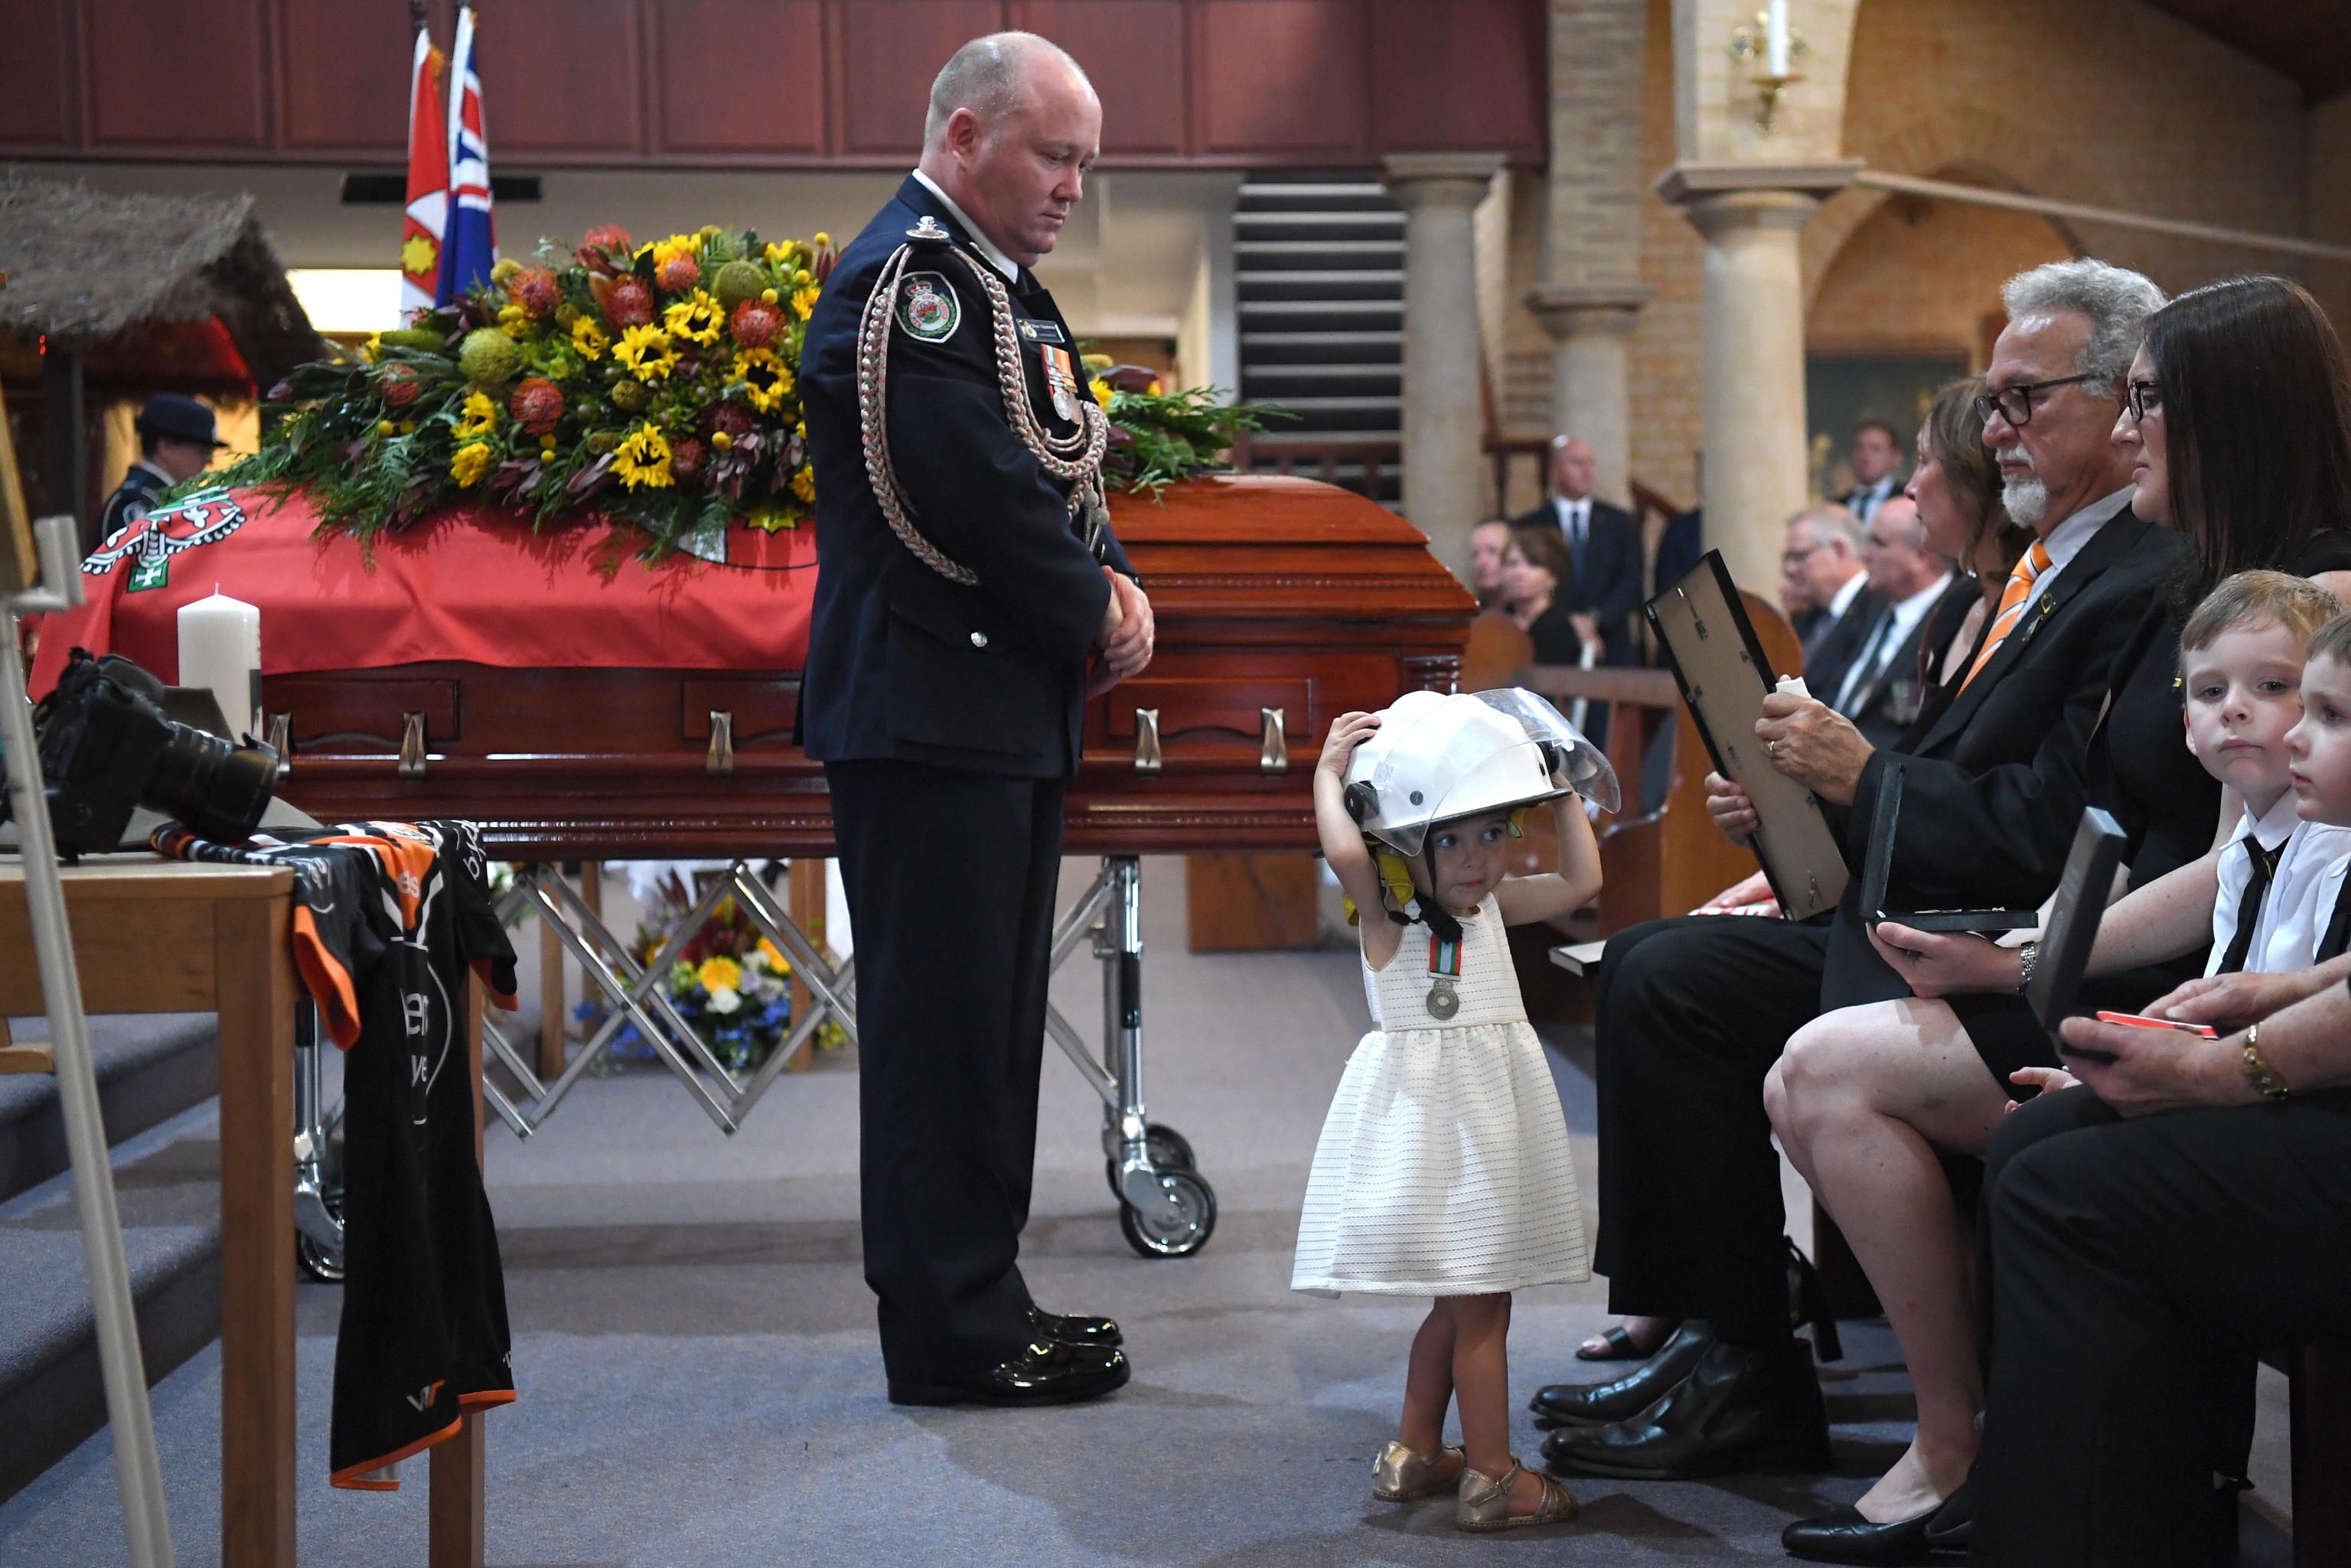 Il commissario dei vigili del fuoco guarda la figlia di un volontario mentre indossa l'elmetto del padre al suo funerale